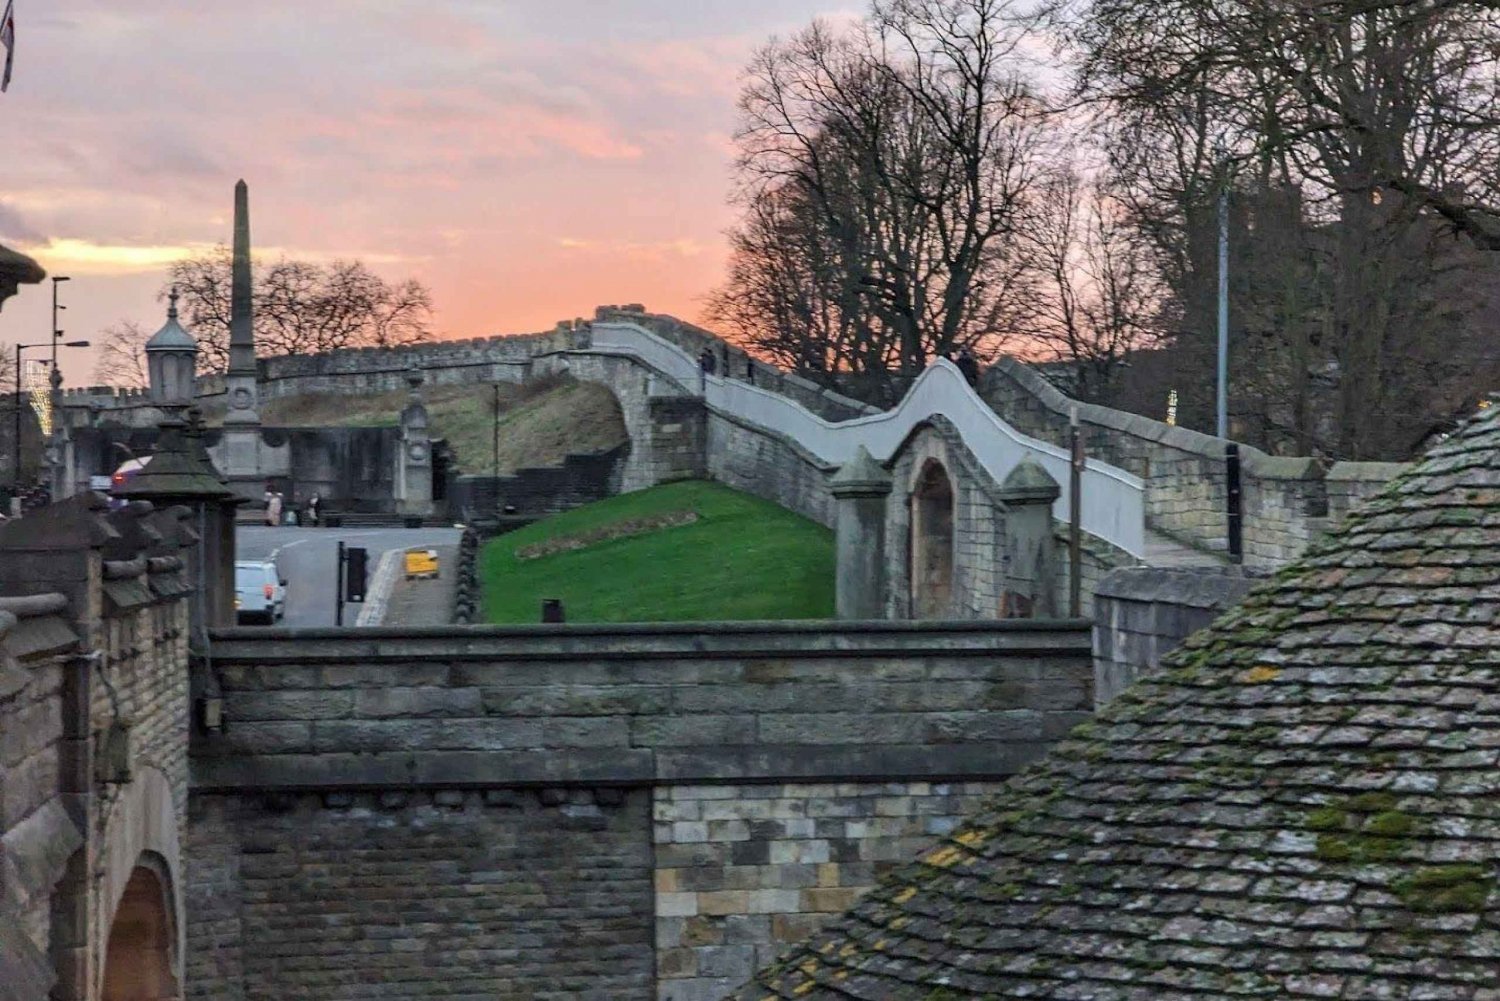 Entdecke Yorks Erbe: In-App Audio-Tour durch die Stadtmauern